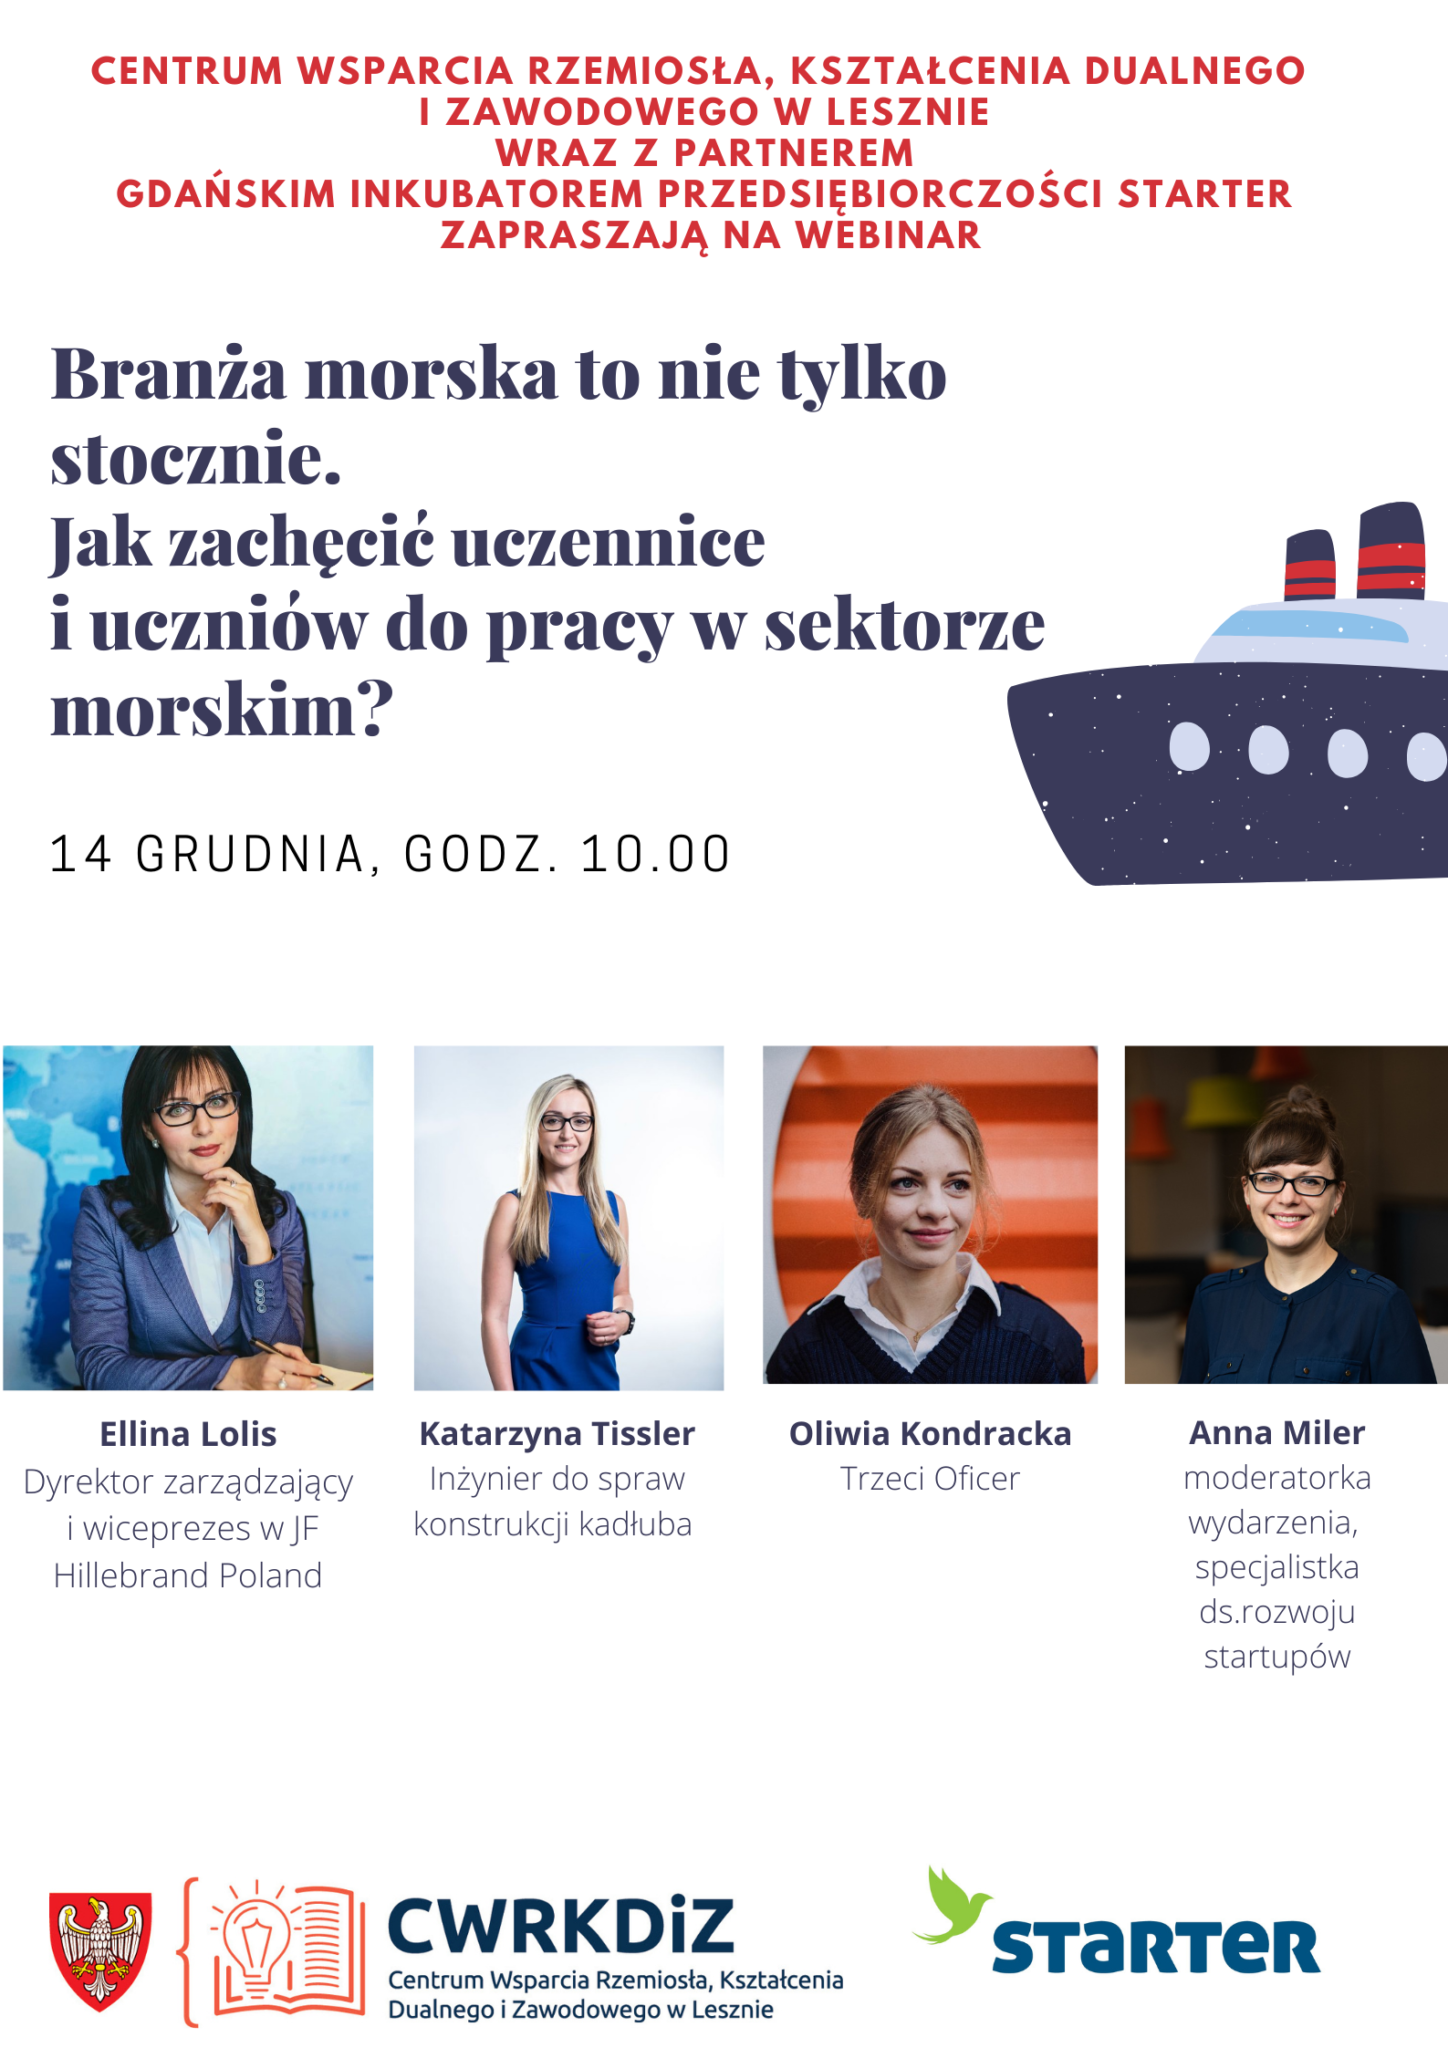 Plakat wydarzenia przedstawia jego tytuł, grafikę wektorową statku oraz zdjęcia czterech kobiet, które wezmą udział w wydarzeniu.